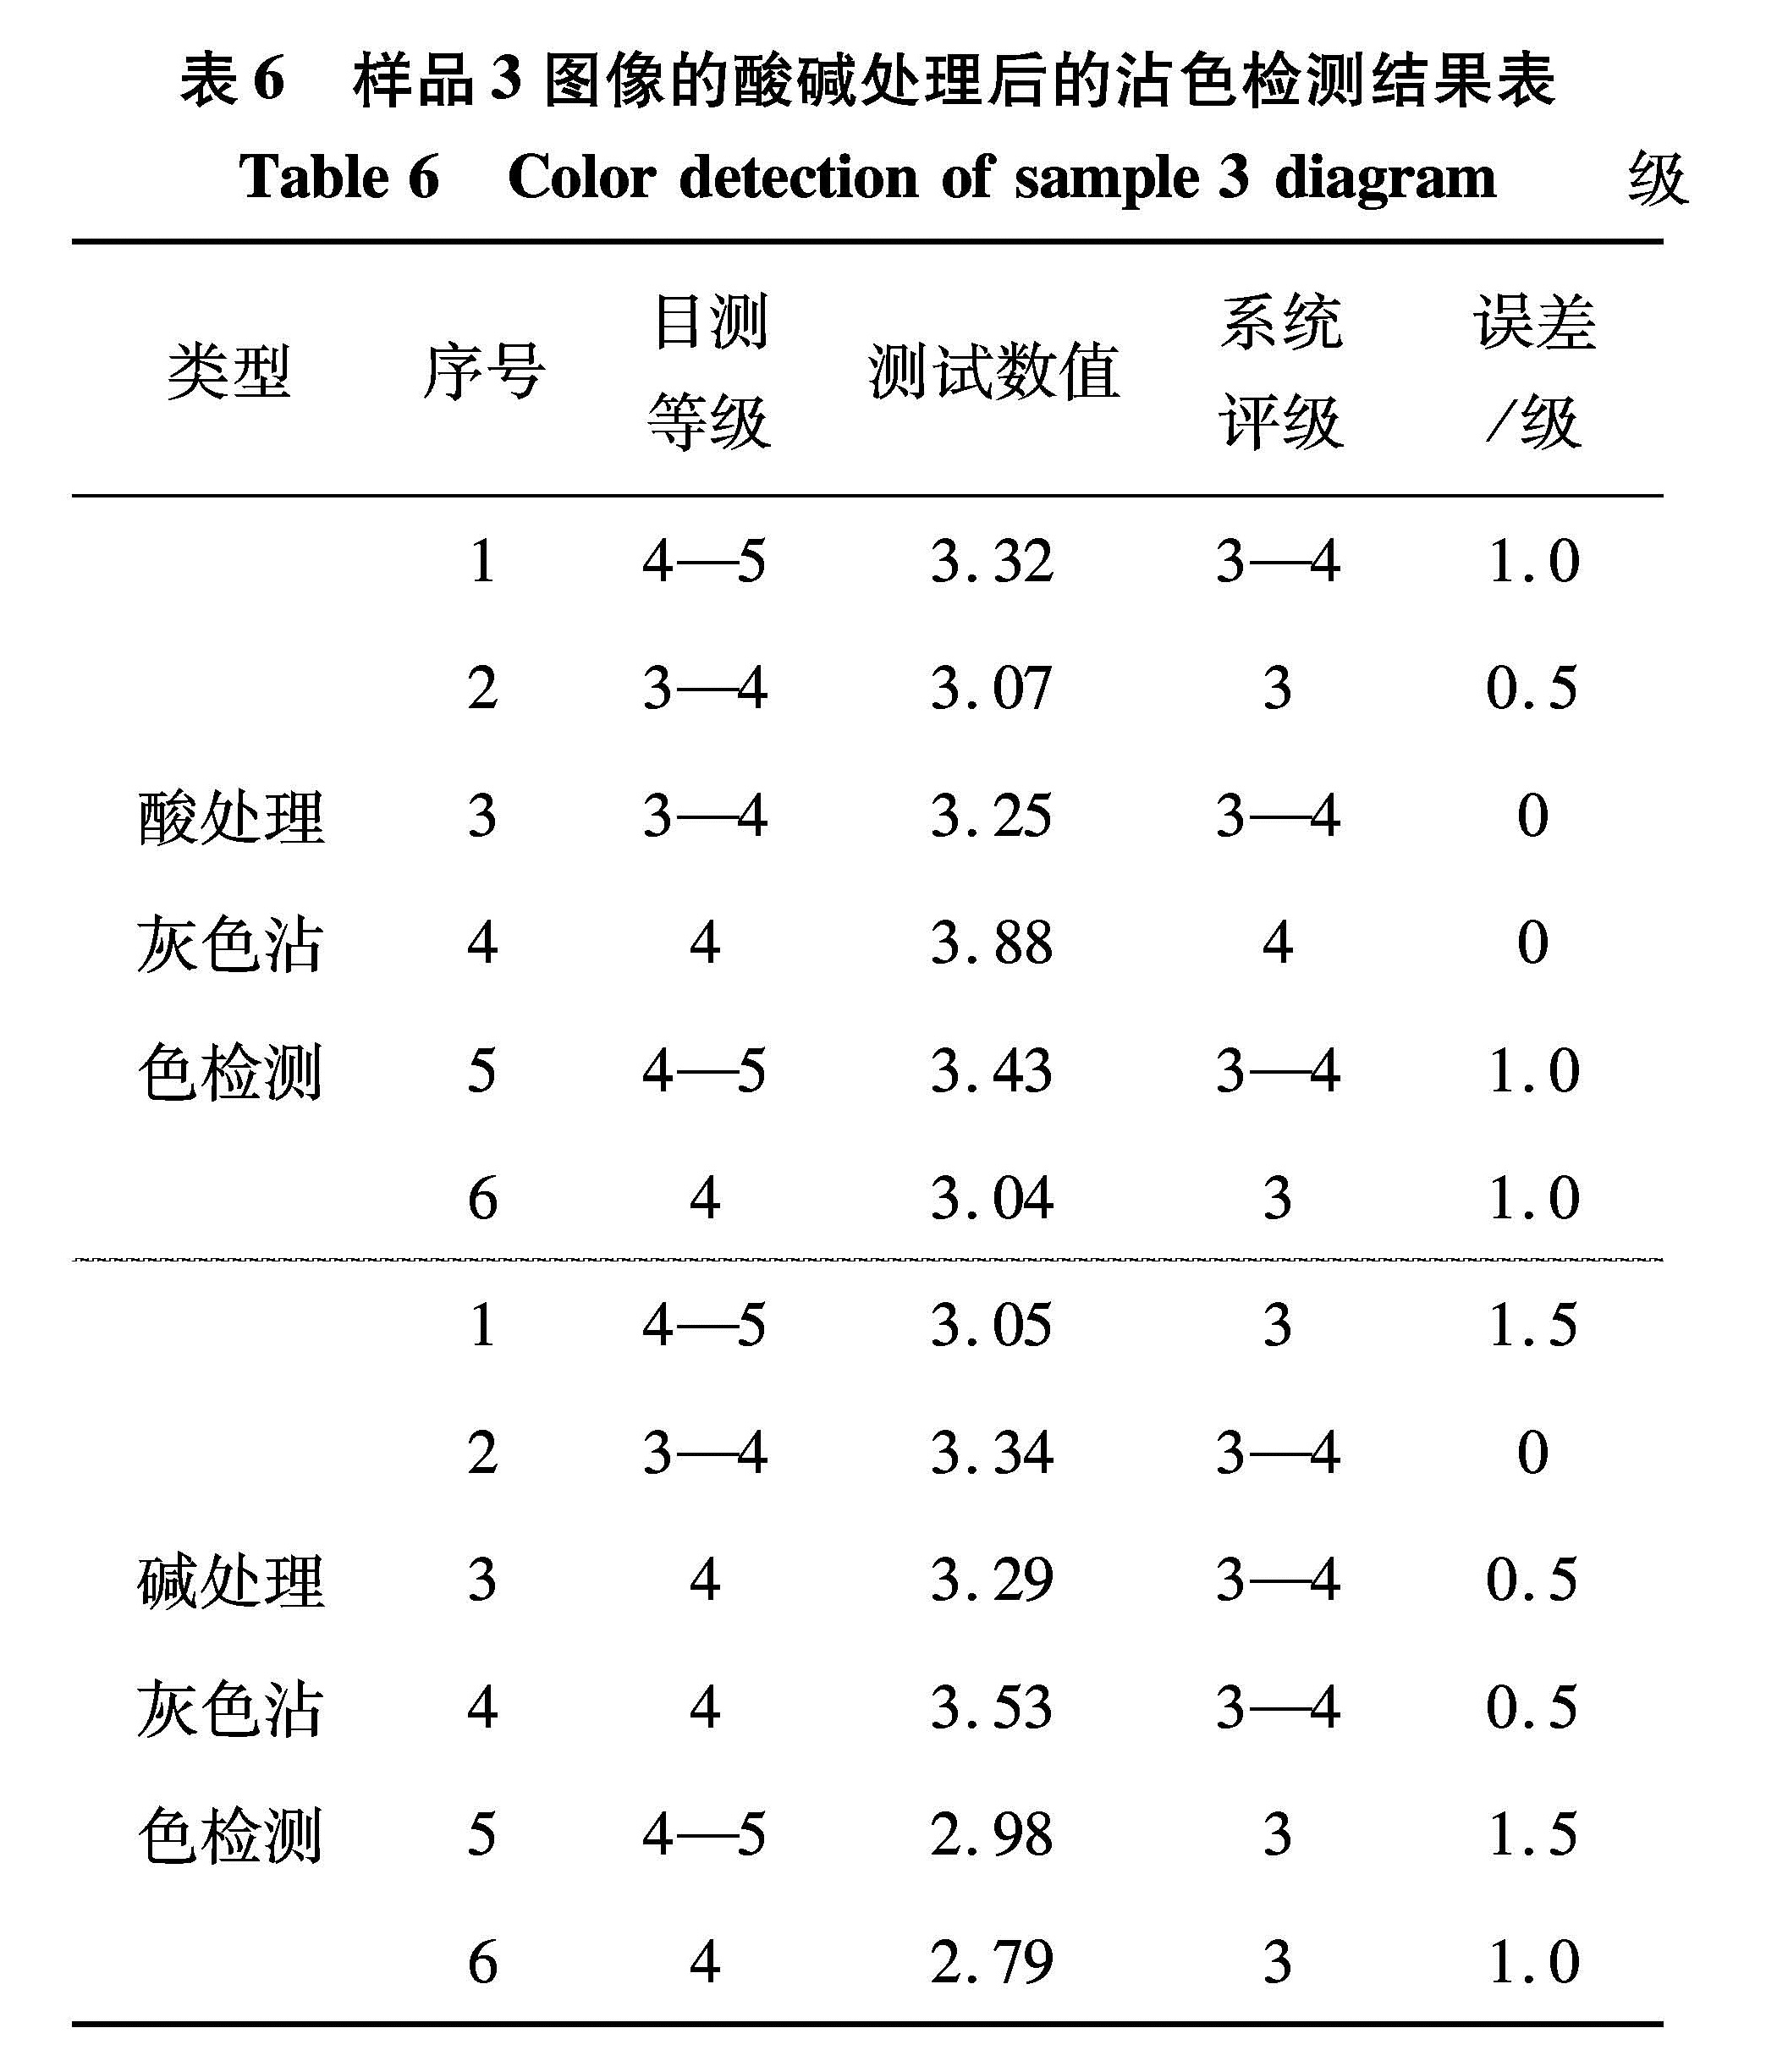 表6 样品3图像的酸碱处理后的沾色检测结果表<br/>Table 6 Color detection of sample 3 diagram 